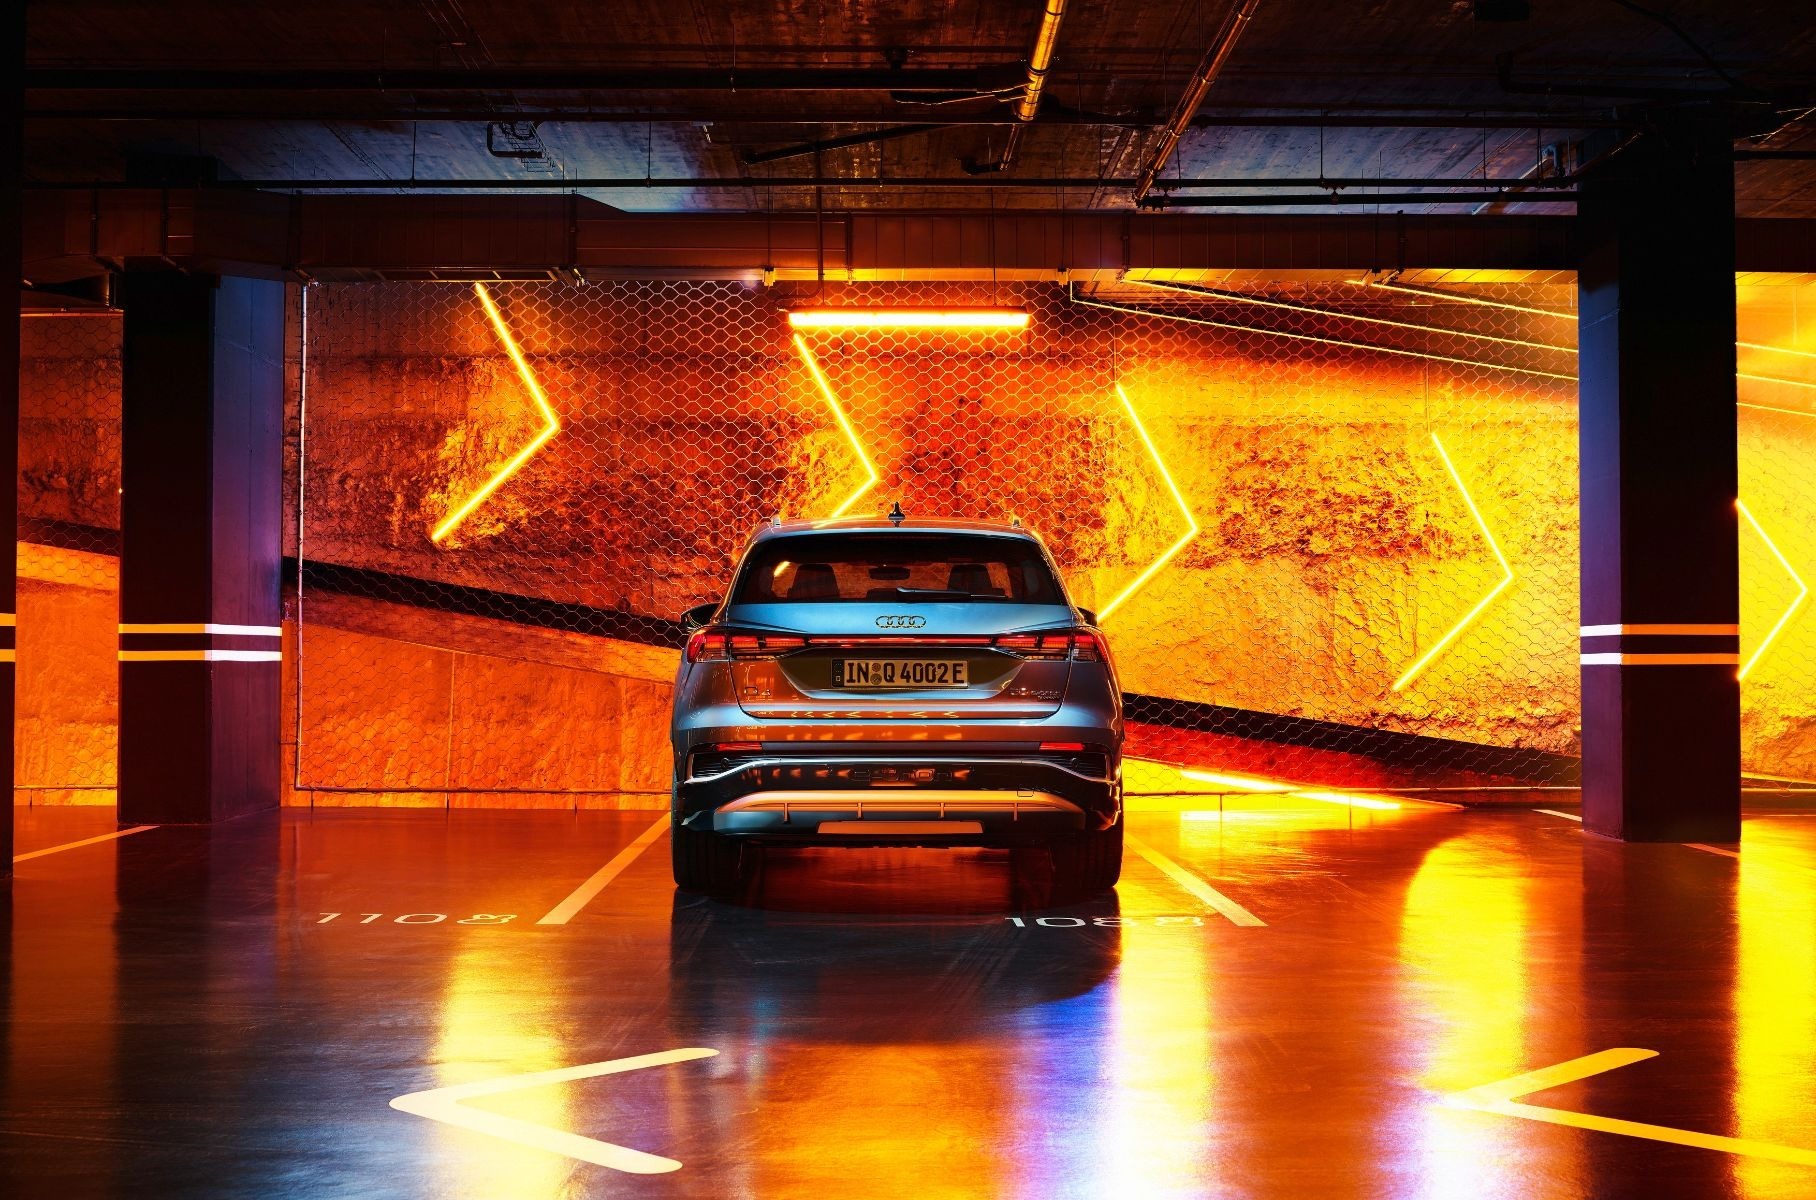 Электрические Audi стали доступнее: представлены Q4 e-tron и Q4 Sportback e-tron